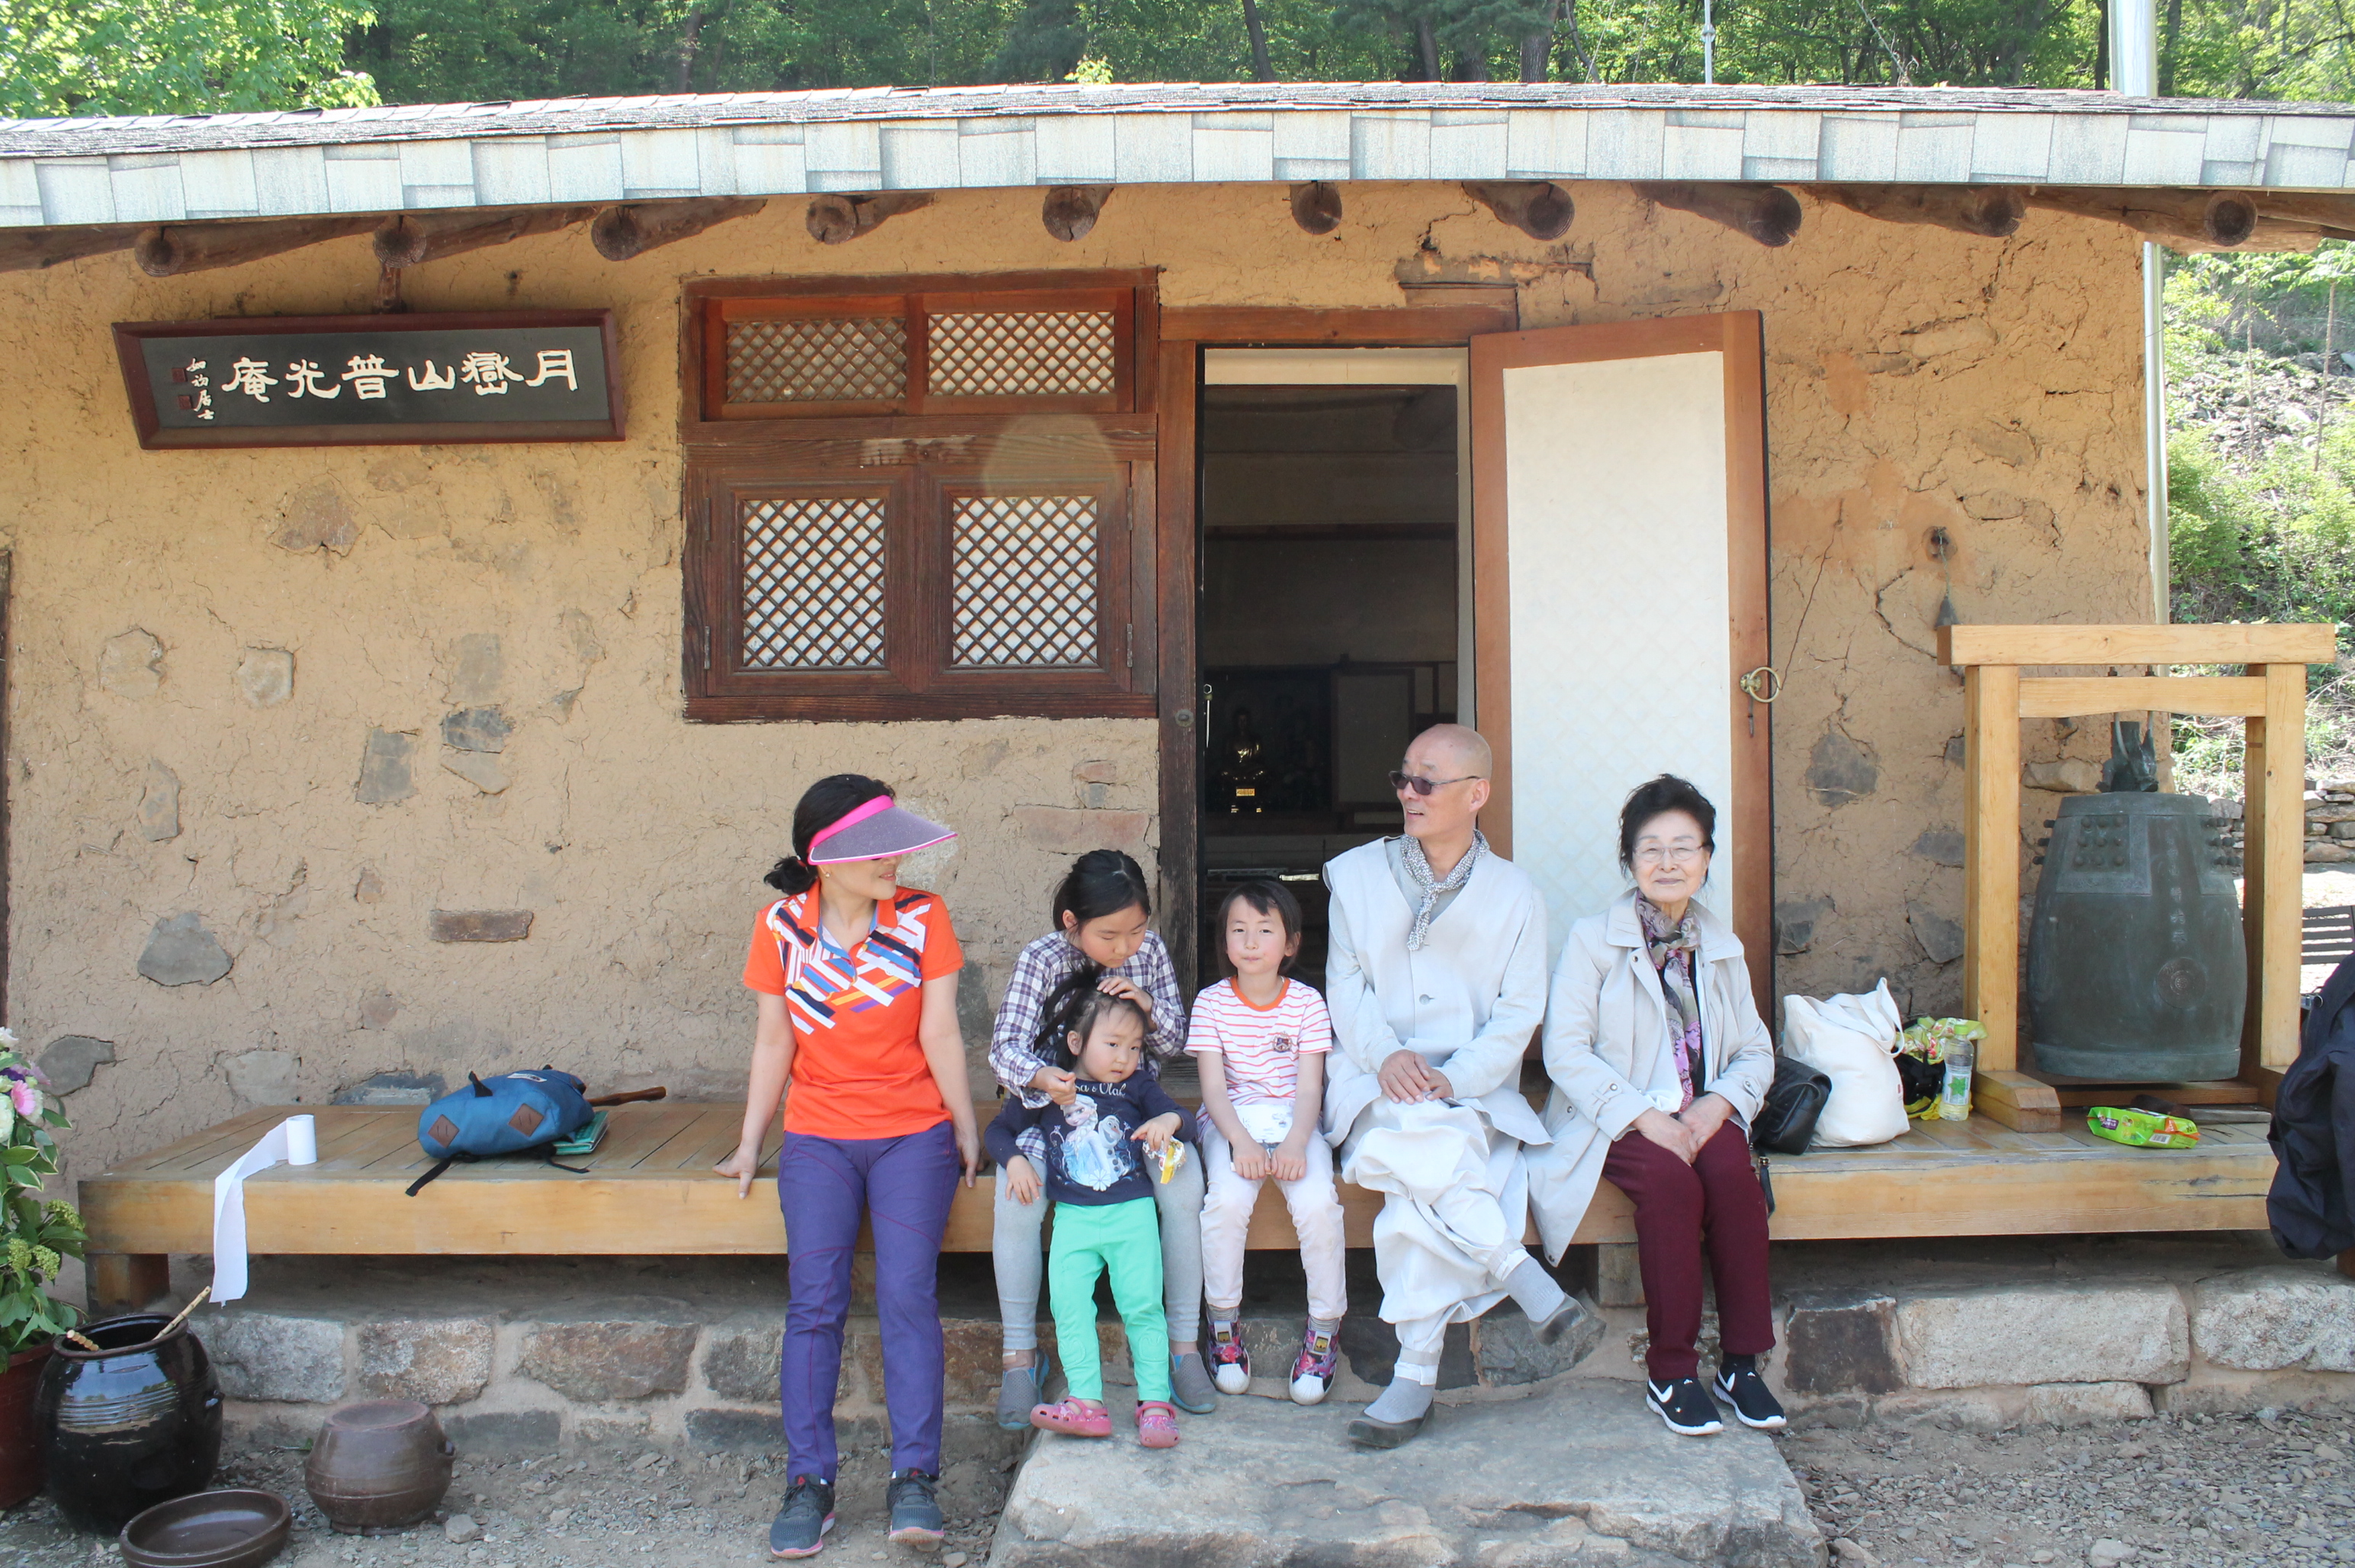 보광암 흙집 앞에서 아이들과 함께 앉아있는 명진 스님.